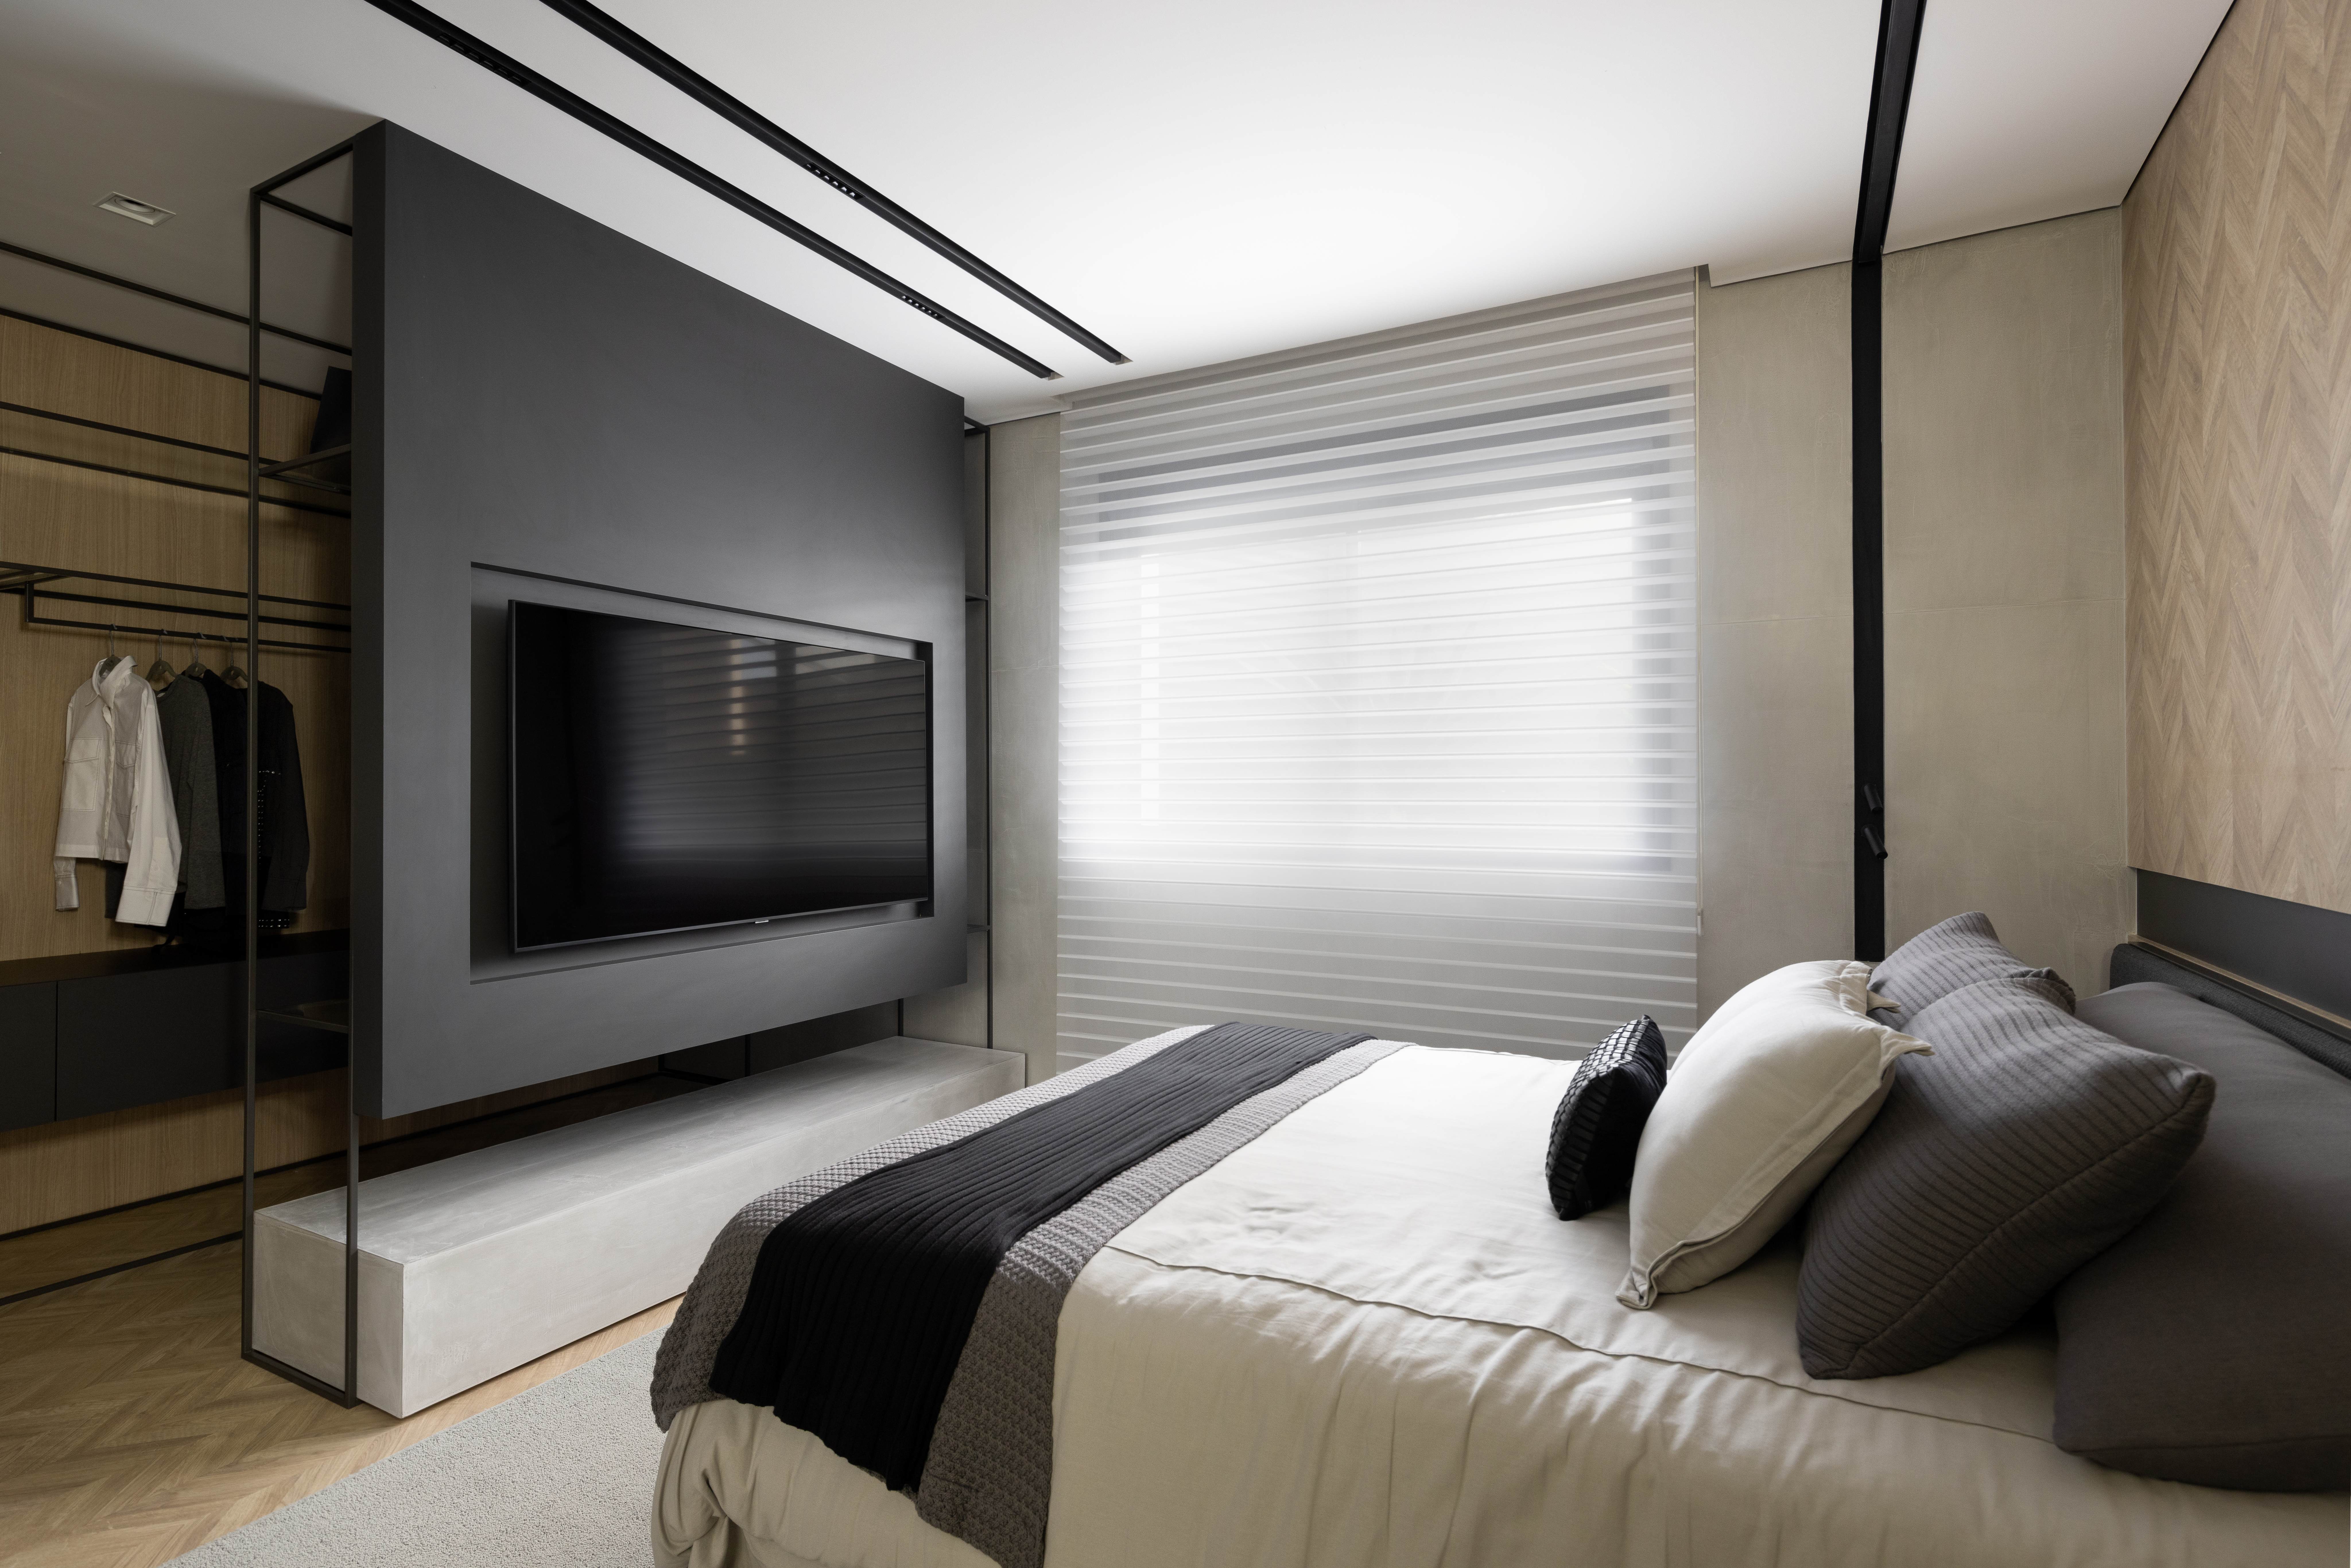 Apê de 142 m² tem paleta elegante de preto e branco e layout integrado. Projeto de Boher Arquitetos. Na foto, quarto de casal com tv e closet, persiana.